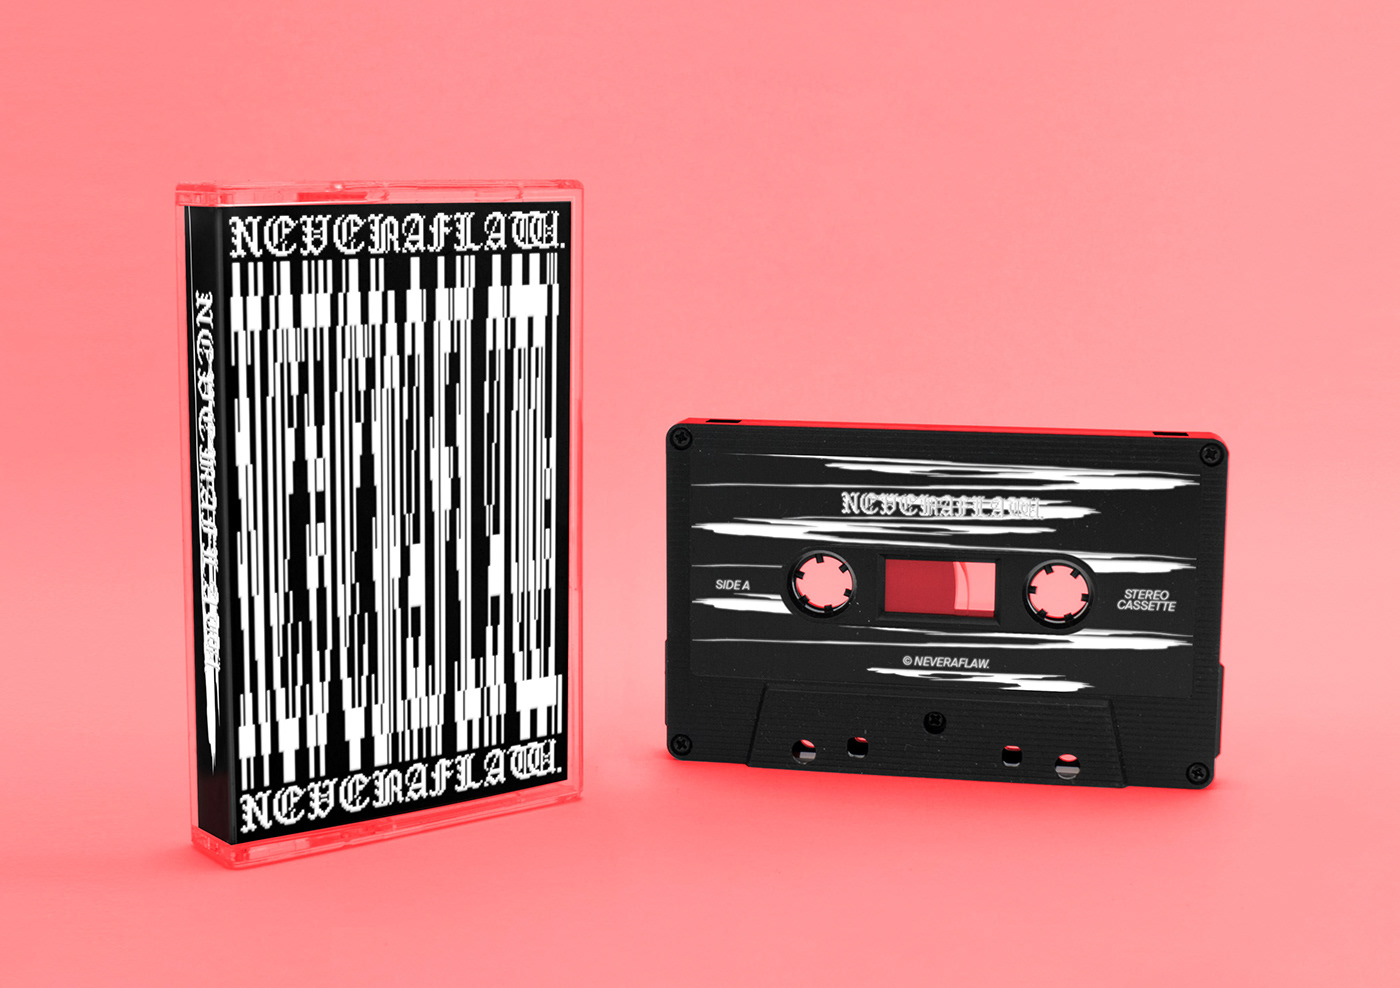 NeverAflaw. brando corradini Grafikdesign music cassette Packaging editorial